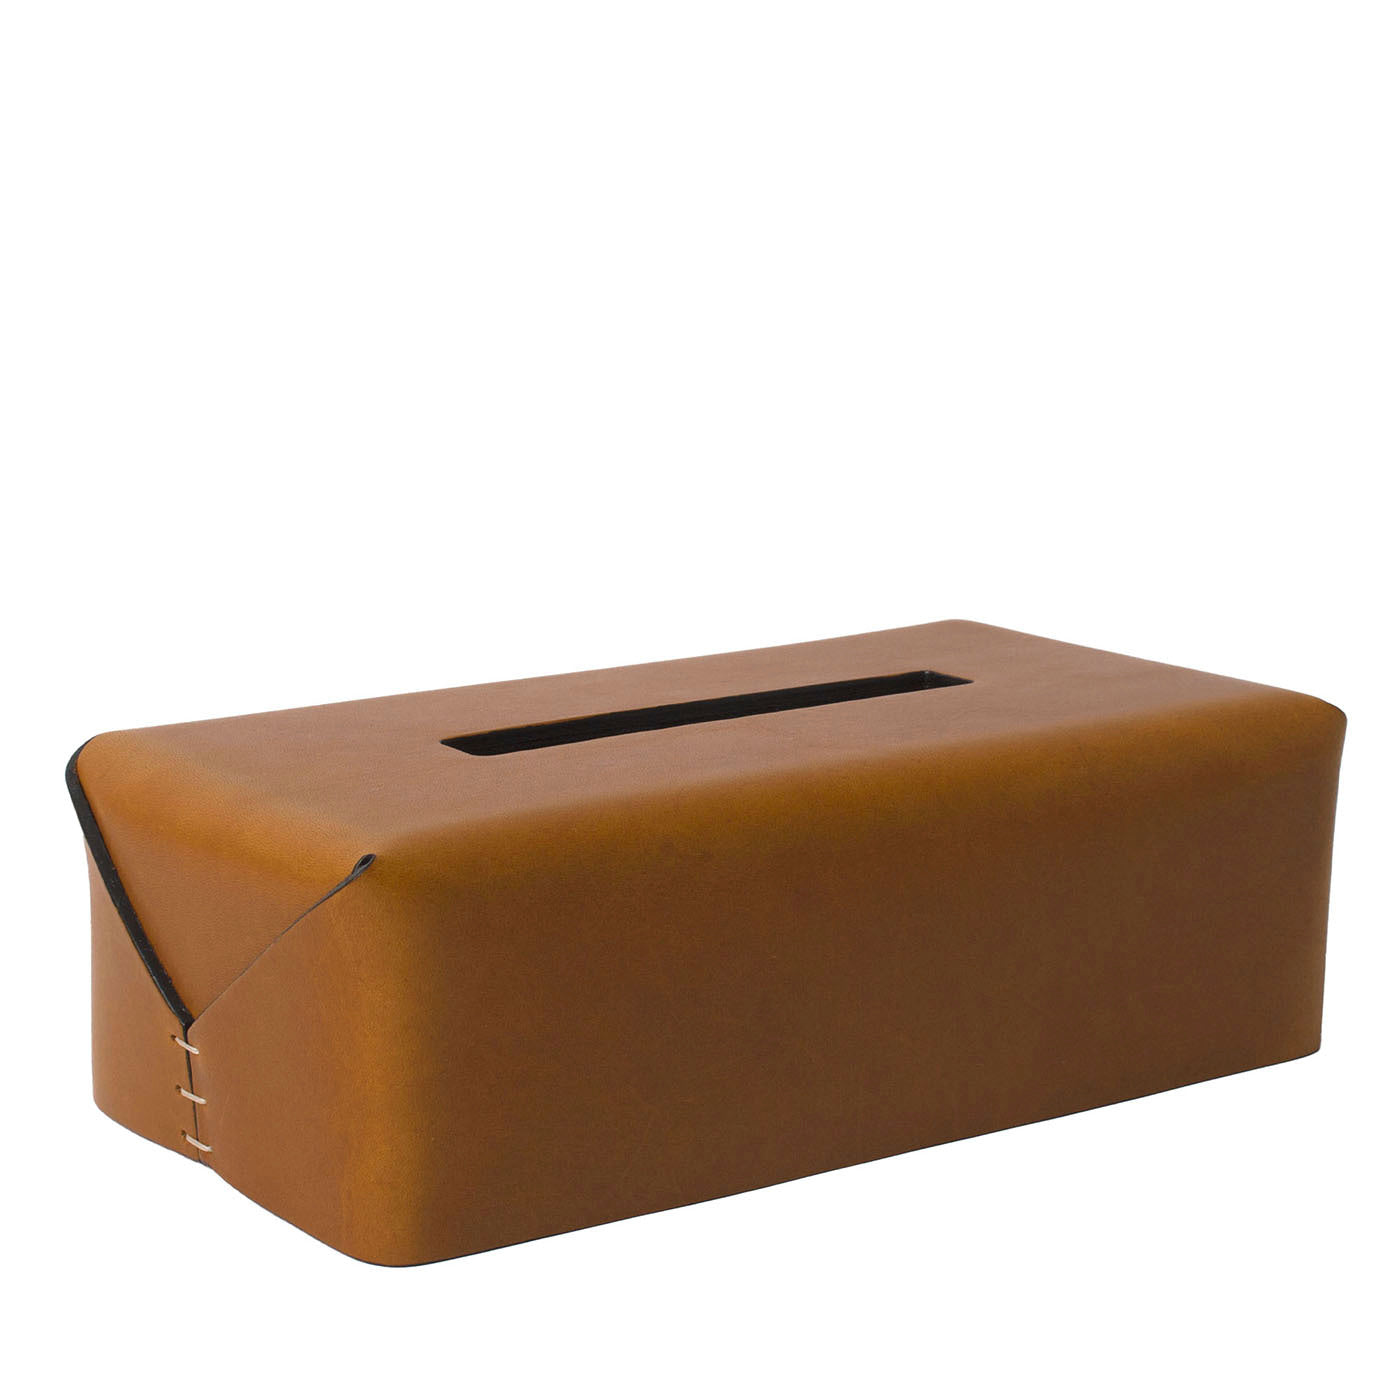 Regular Rectangular-Cut Brown Tissue Box by Oscar Maschera - Main view